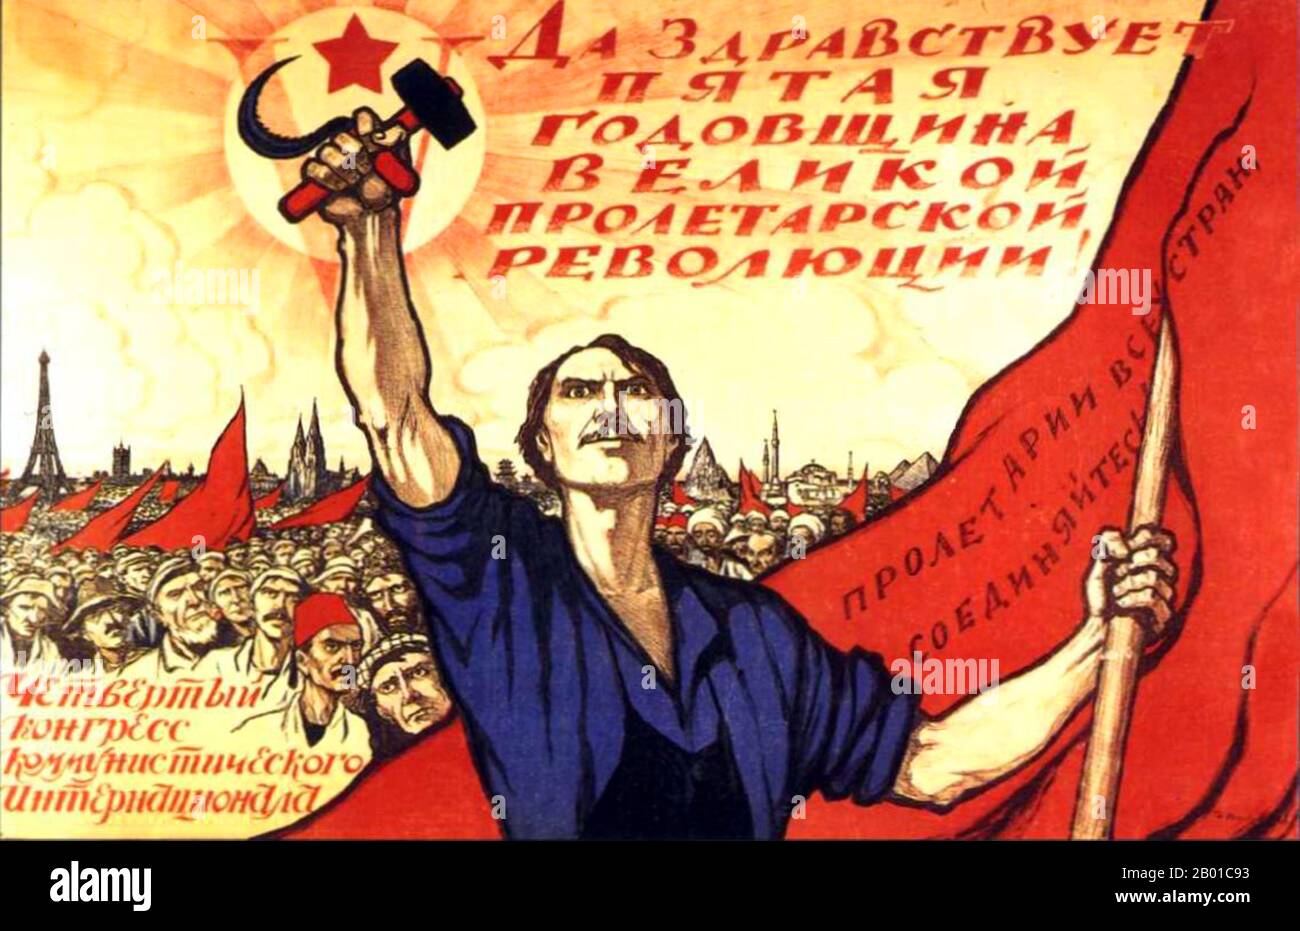 Russland/UdSSR: "Es lebe der 5.. Jahrestag der Großen proletarischen Oktoberrevolution!" Revolutionäres Plakat aus der Sowjetzeit von Iwan Wassiljewitsch Simakow (1877-1925), das die Arbeiter der Welt zeigt, die sich mit der Sowjetunion in der Avantgarde vereinen, 1922. Sozialistischer Realismus ist ein Stil realistischer Kunst, der in der Sowjetunion entwickelt wurde und in anderen kommunistischen Ländern zu einem dominanten Stil wurde. Der sozialistische Realismus ist ein teleologisch orientierter Stil, der die Ziele des Sozialismus und Kommunismus fördern soll. Obwohl verwandt, sollte es nicht mit sozialem Realismus verwechselt werden. Stockfoto